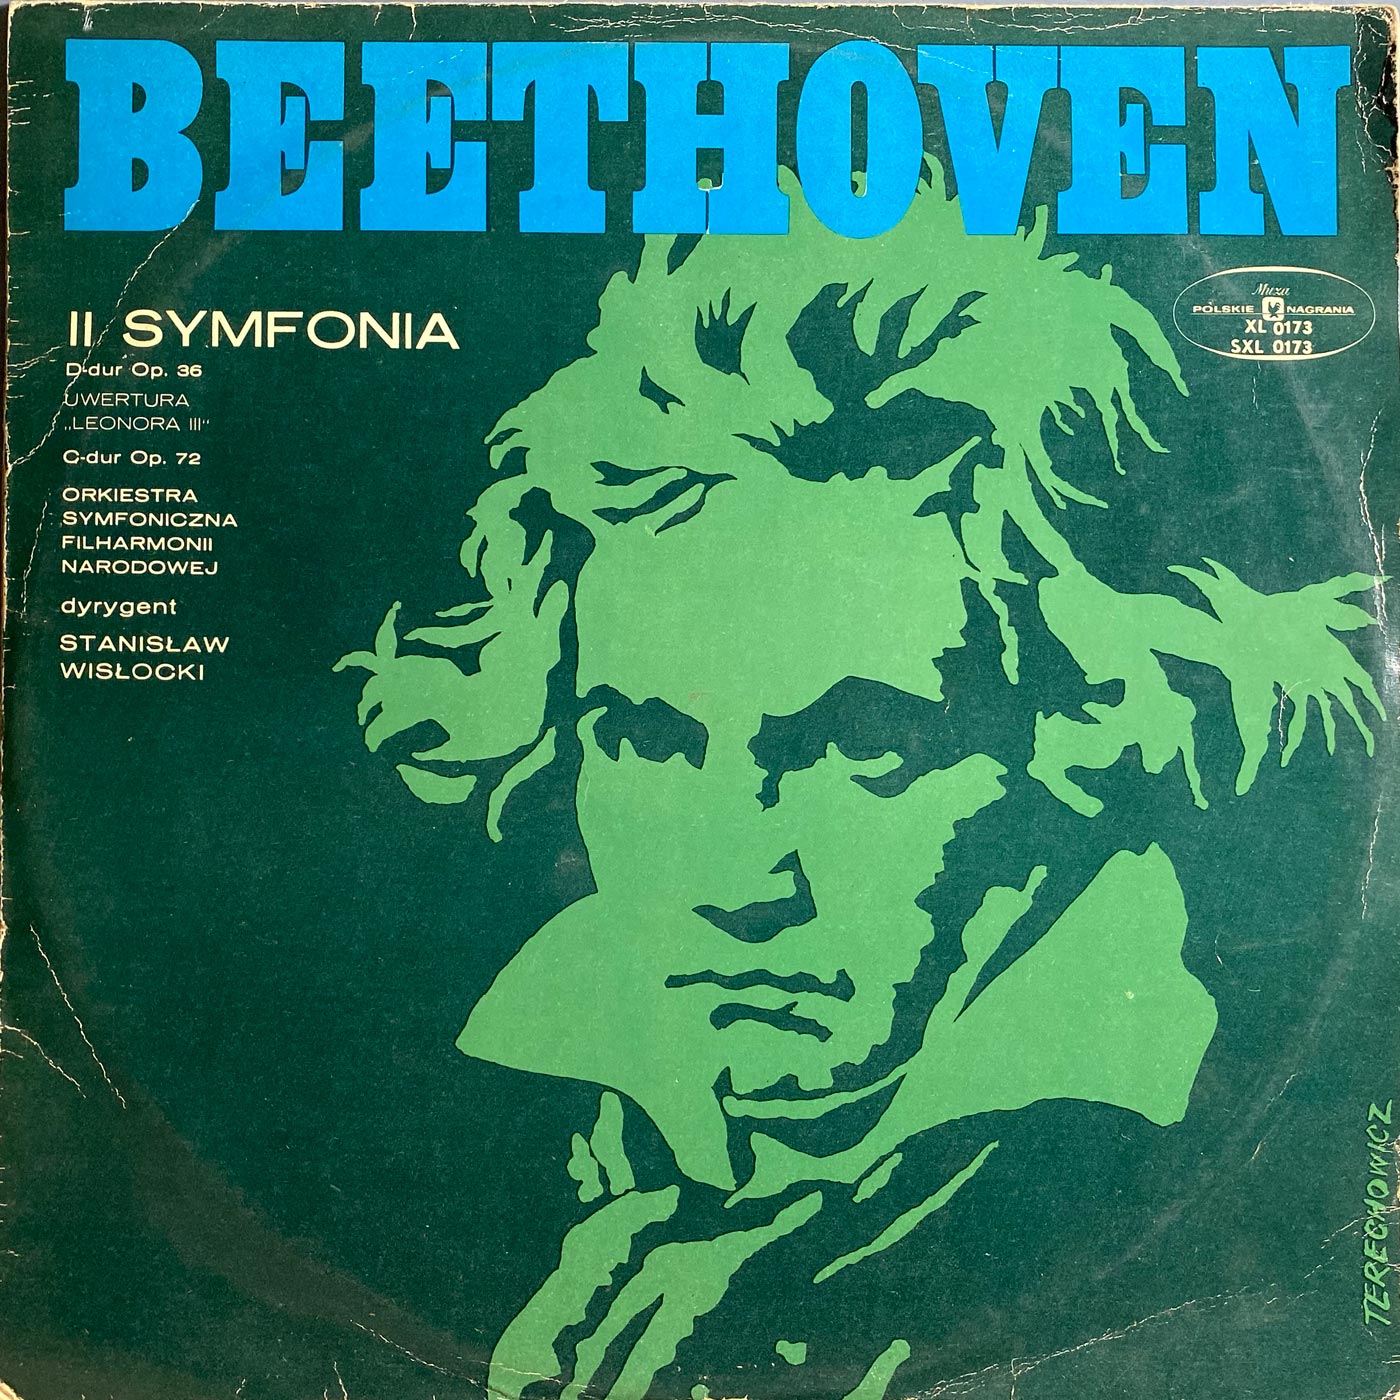 Beethoven - II Symfonia [Poland] [Blue]